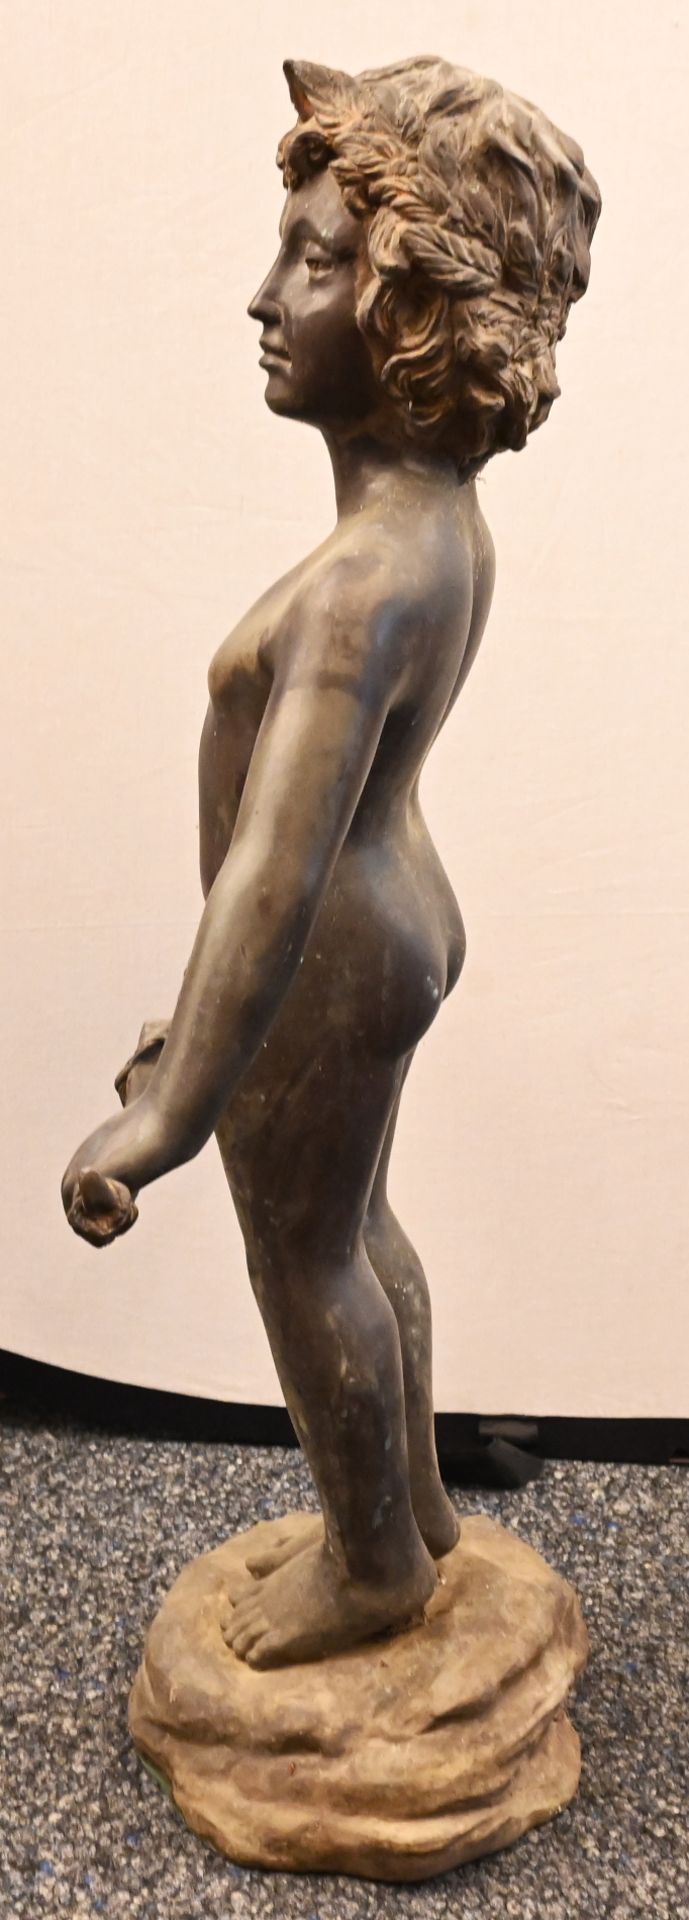 1 Gartenfigur Metall wohl Bronze "Amor mit Bogen", auf Terrainsockel H ca. 92cm, min. besch., berieb - Bild 3 aus 4